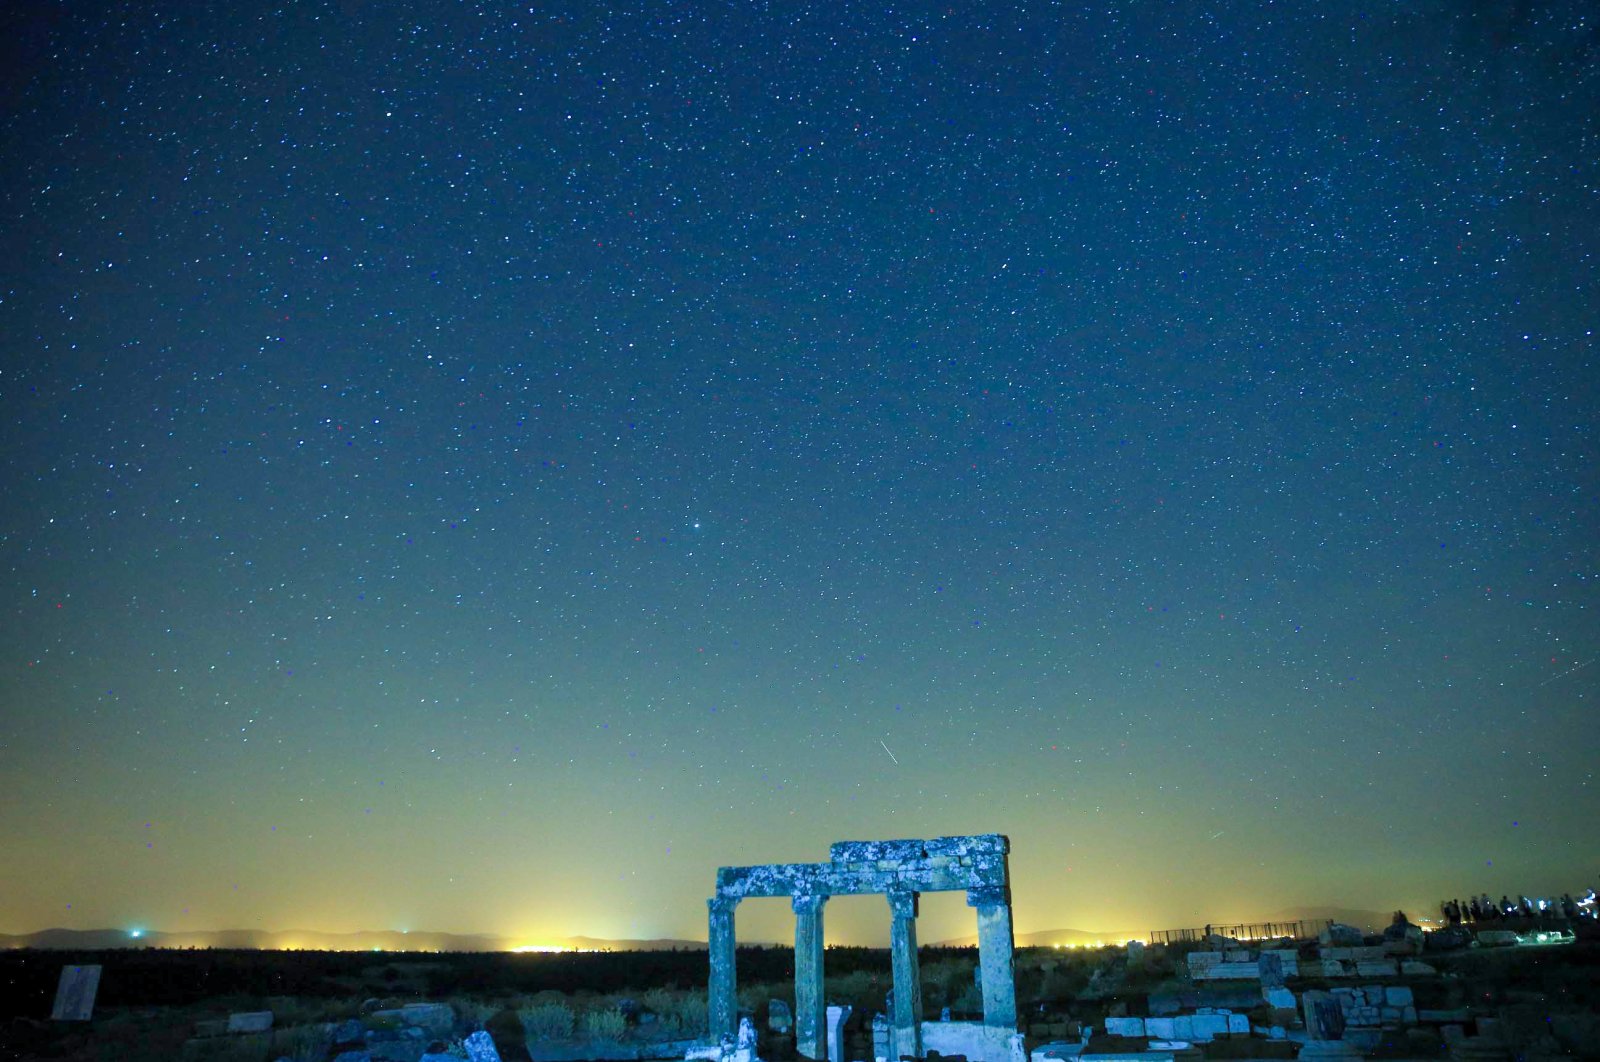 Blaudus Turki menawarkan tempat yang sempurna untuk fotografer malam